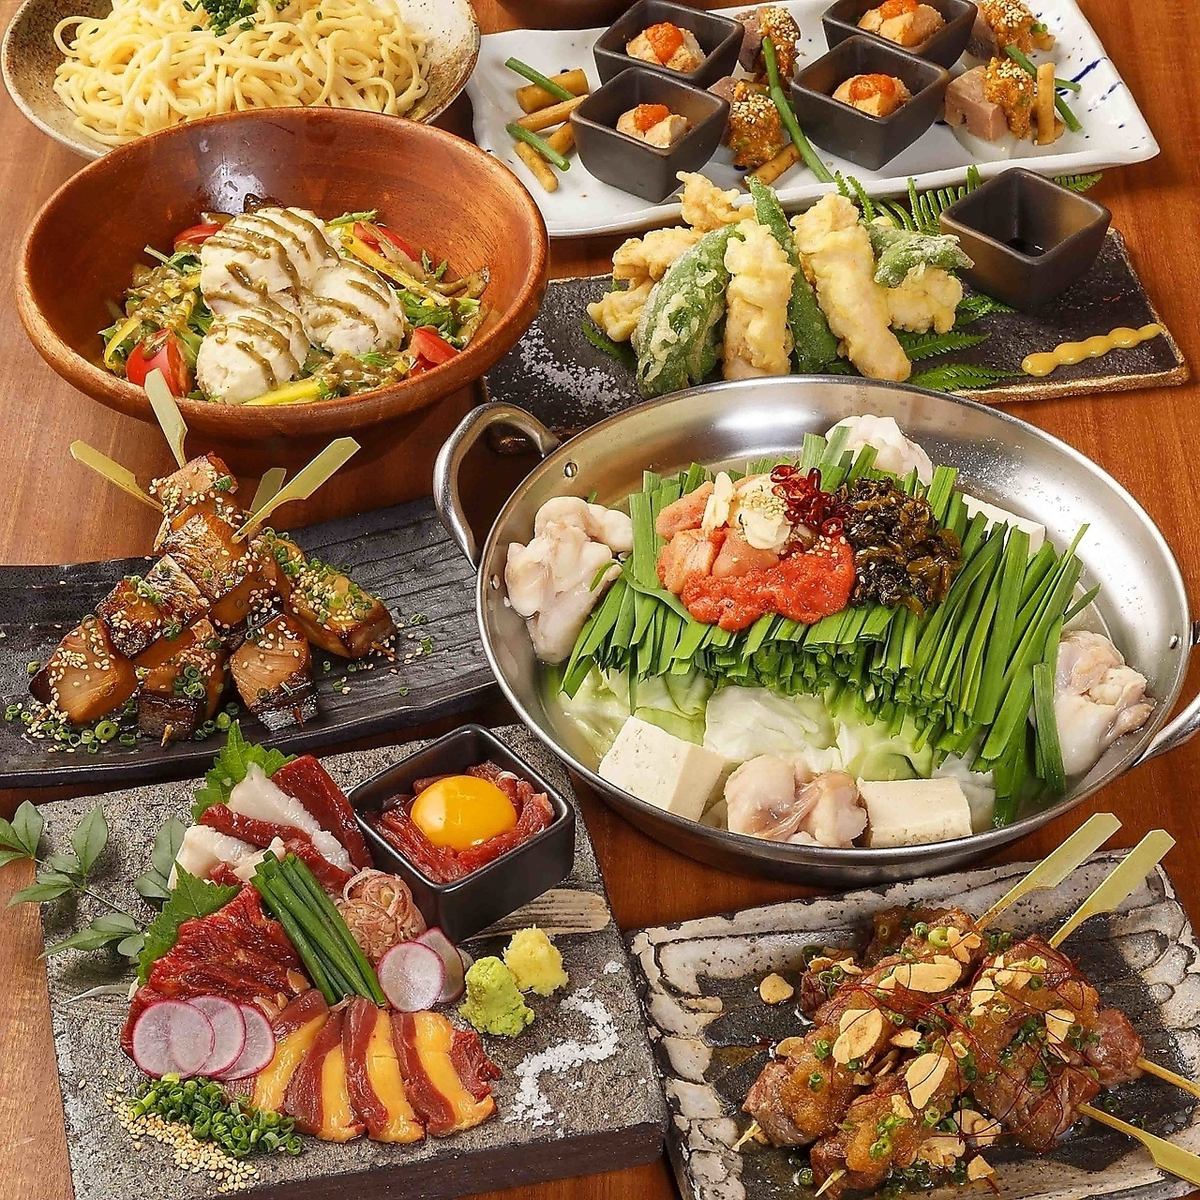 享受博多美食和種類繁多的無限暢飲3小時起價3,000日元起